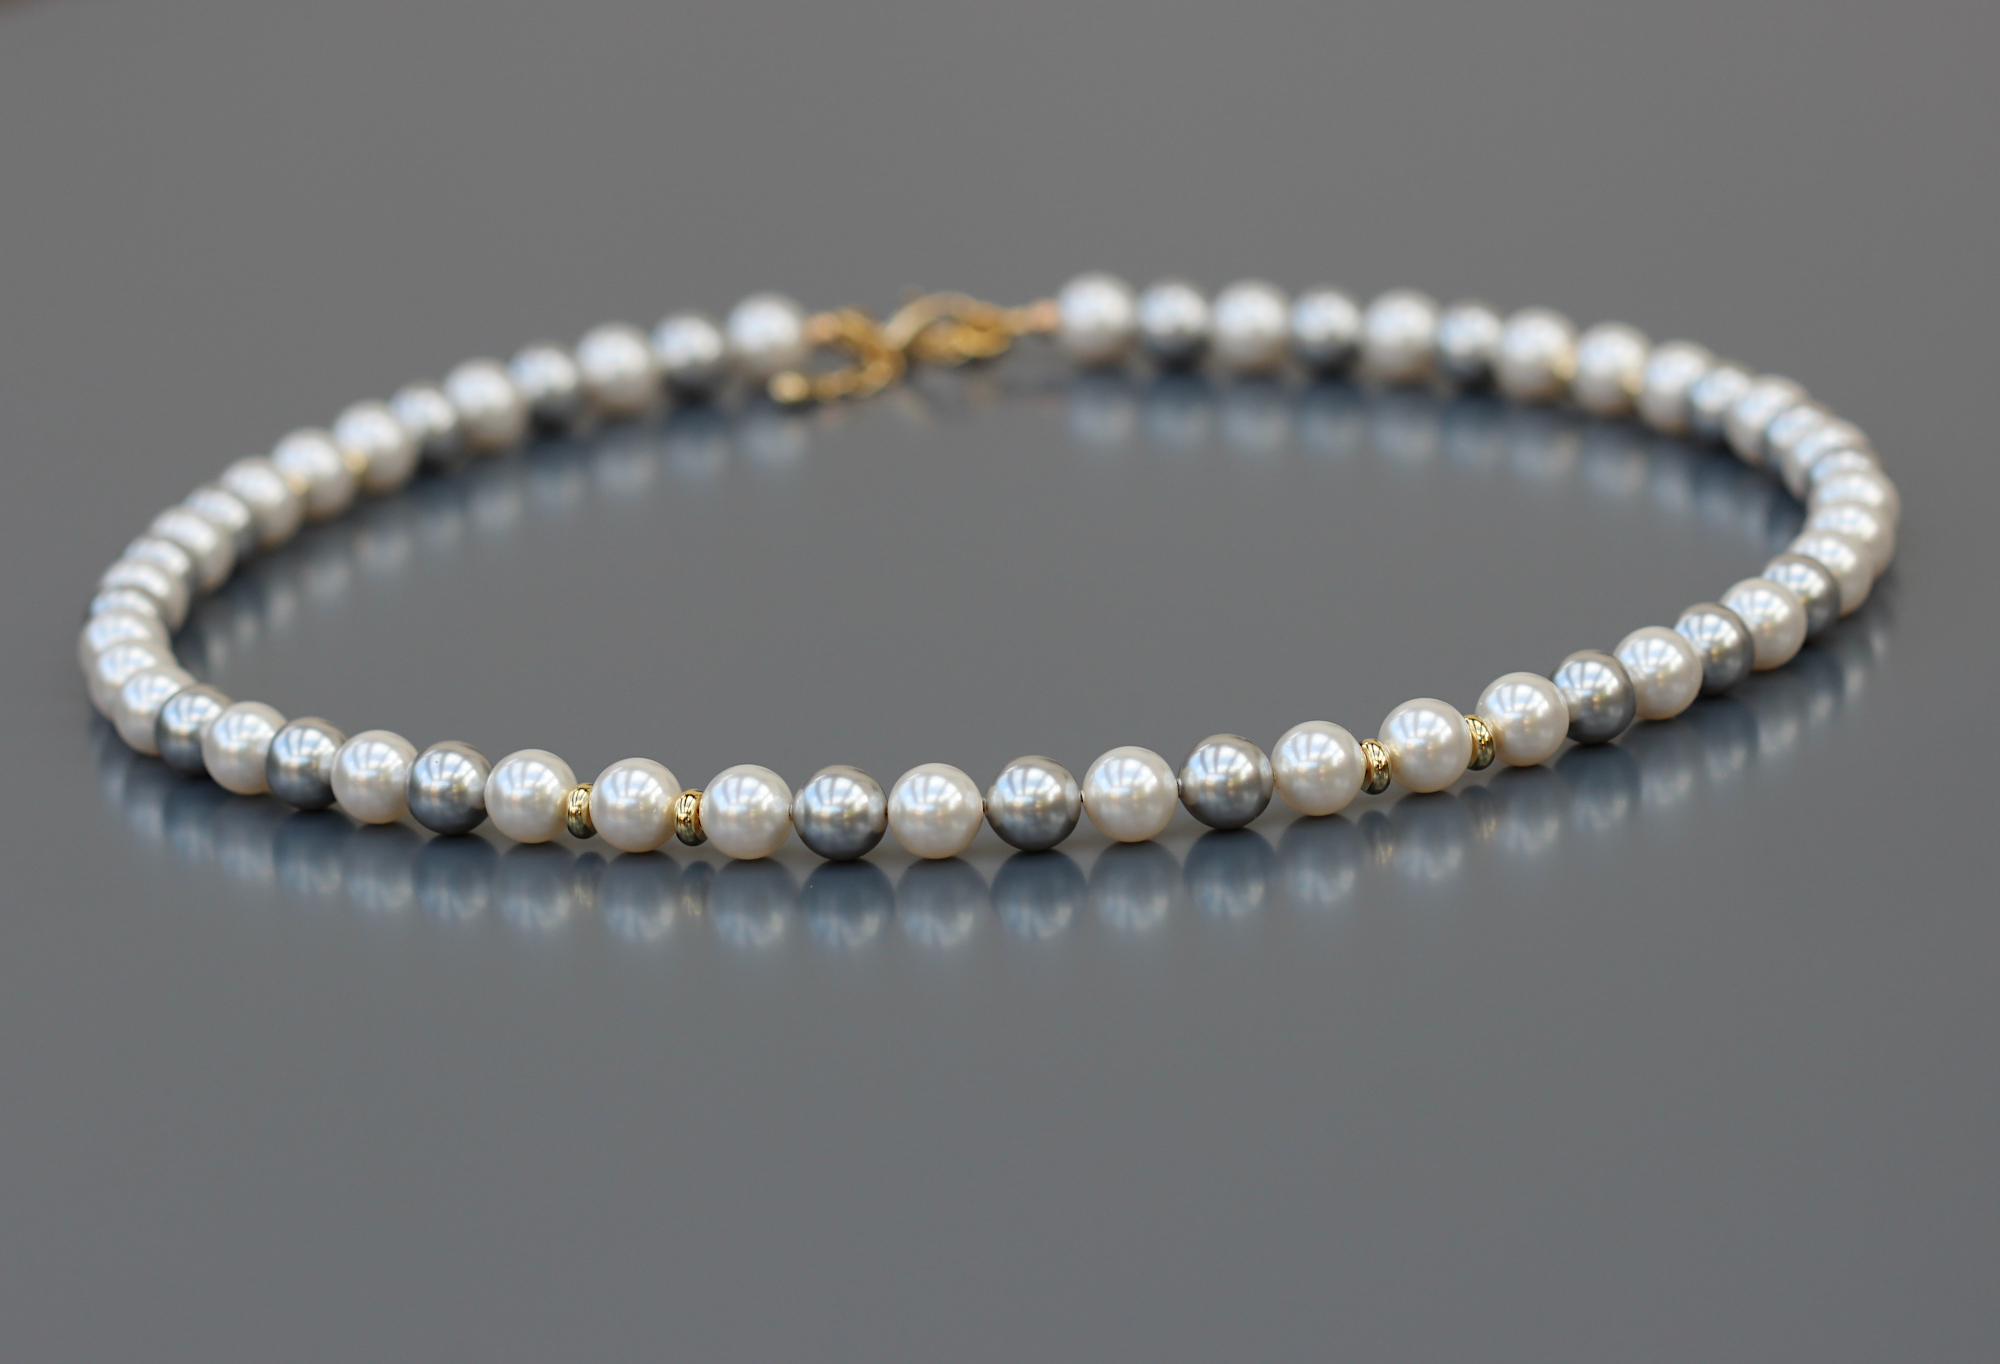 Collier mi-long pour femme en perles rondes Cristal européen blanc nacré et Heishi rondelle acier inox doré